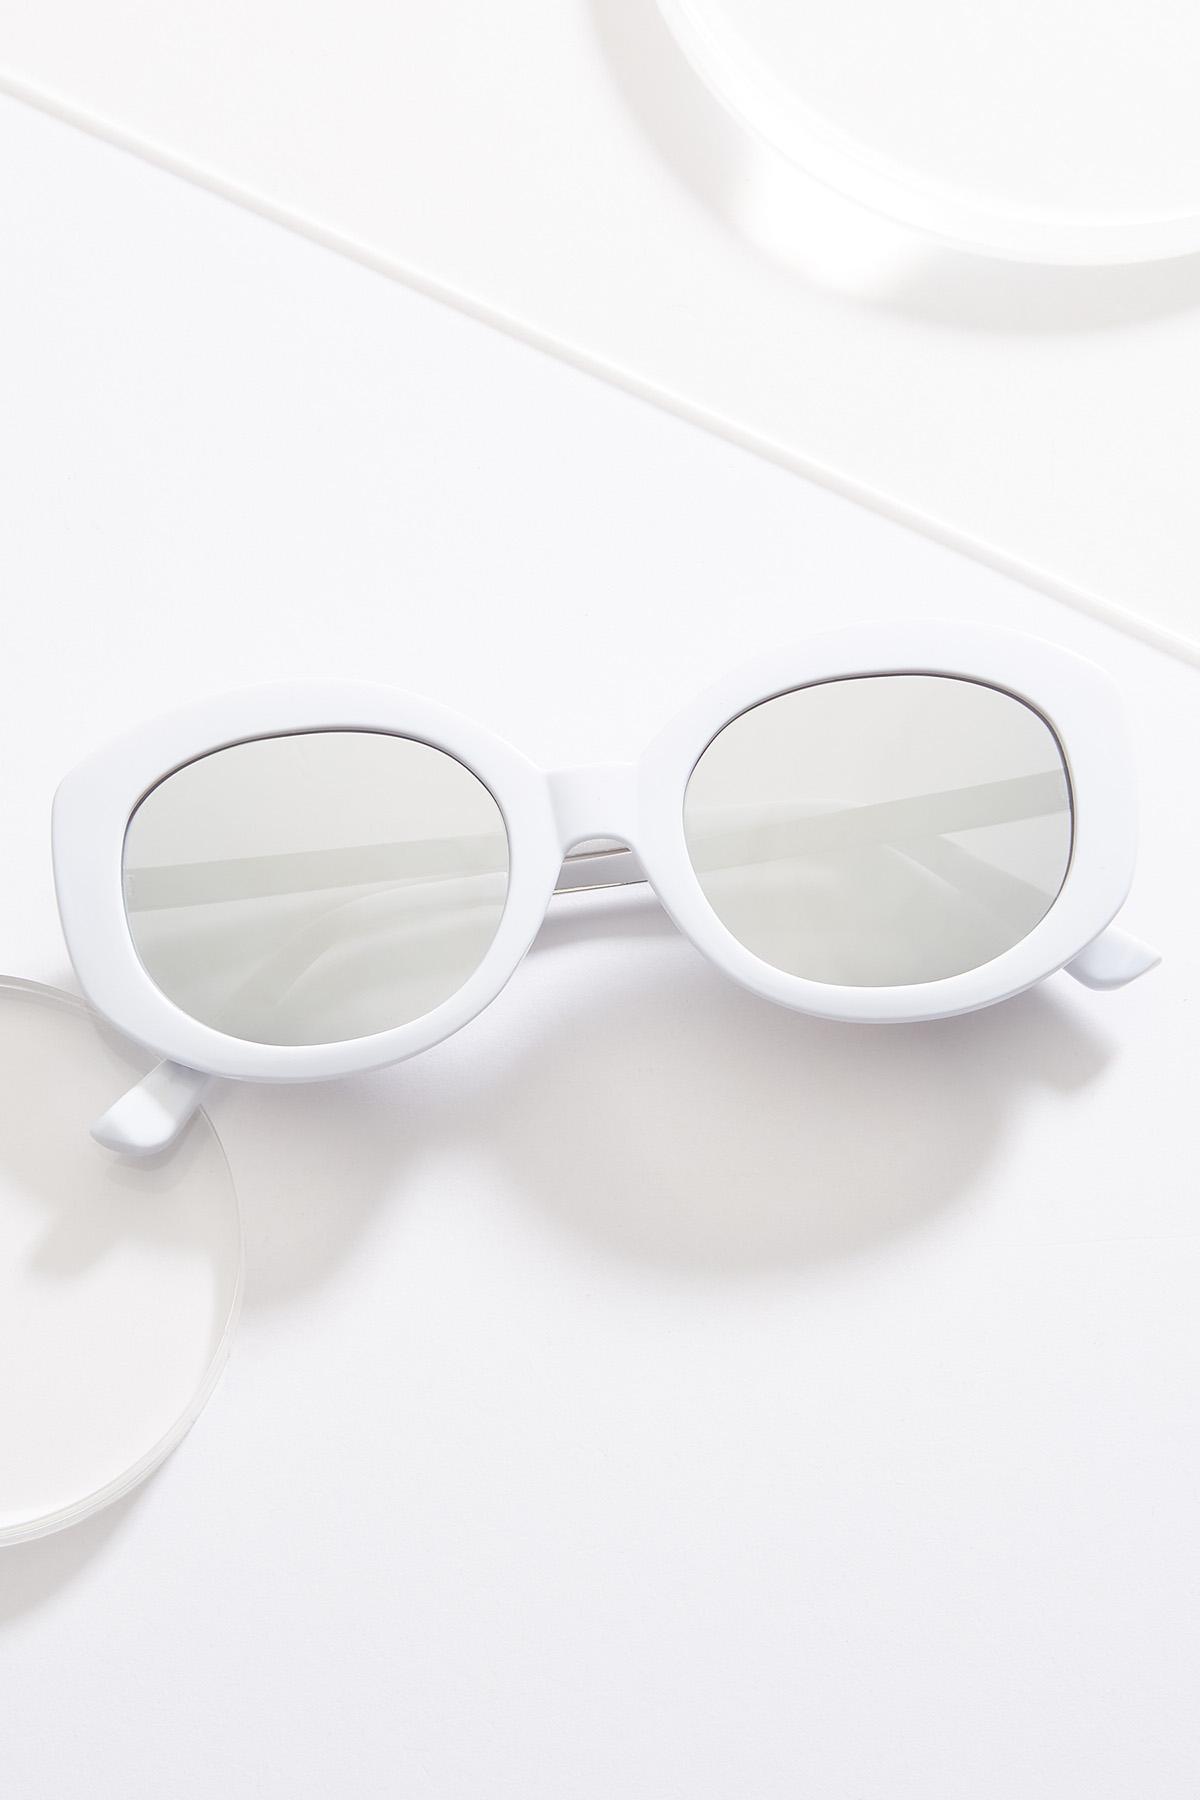 Bright White Oval Sunglasses